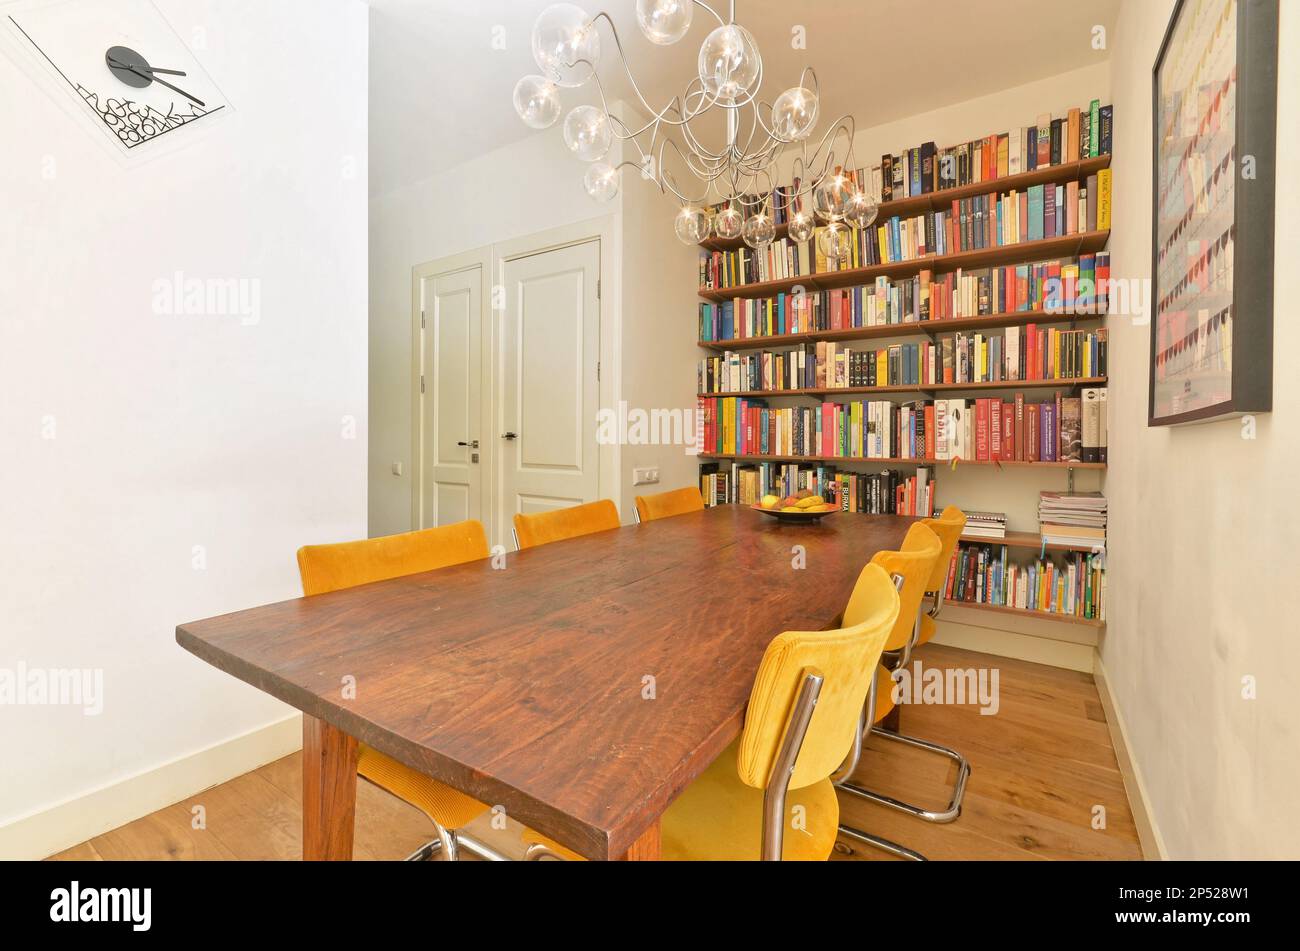 Amsterdam, pays-Bas - 10 avril 2021 : une salle à manger avec quelques livres sur les étagères et une chandel dans la table est entourée de chaises jaunes Banque D'Images